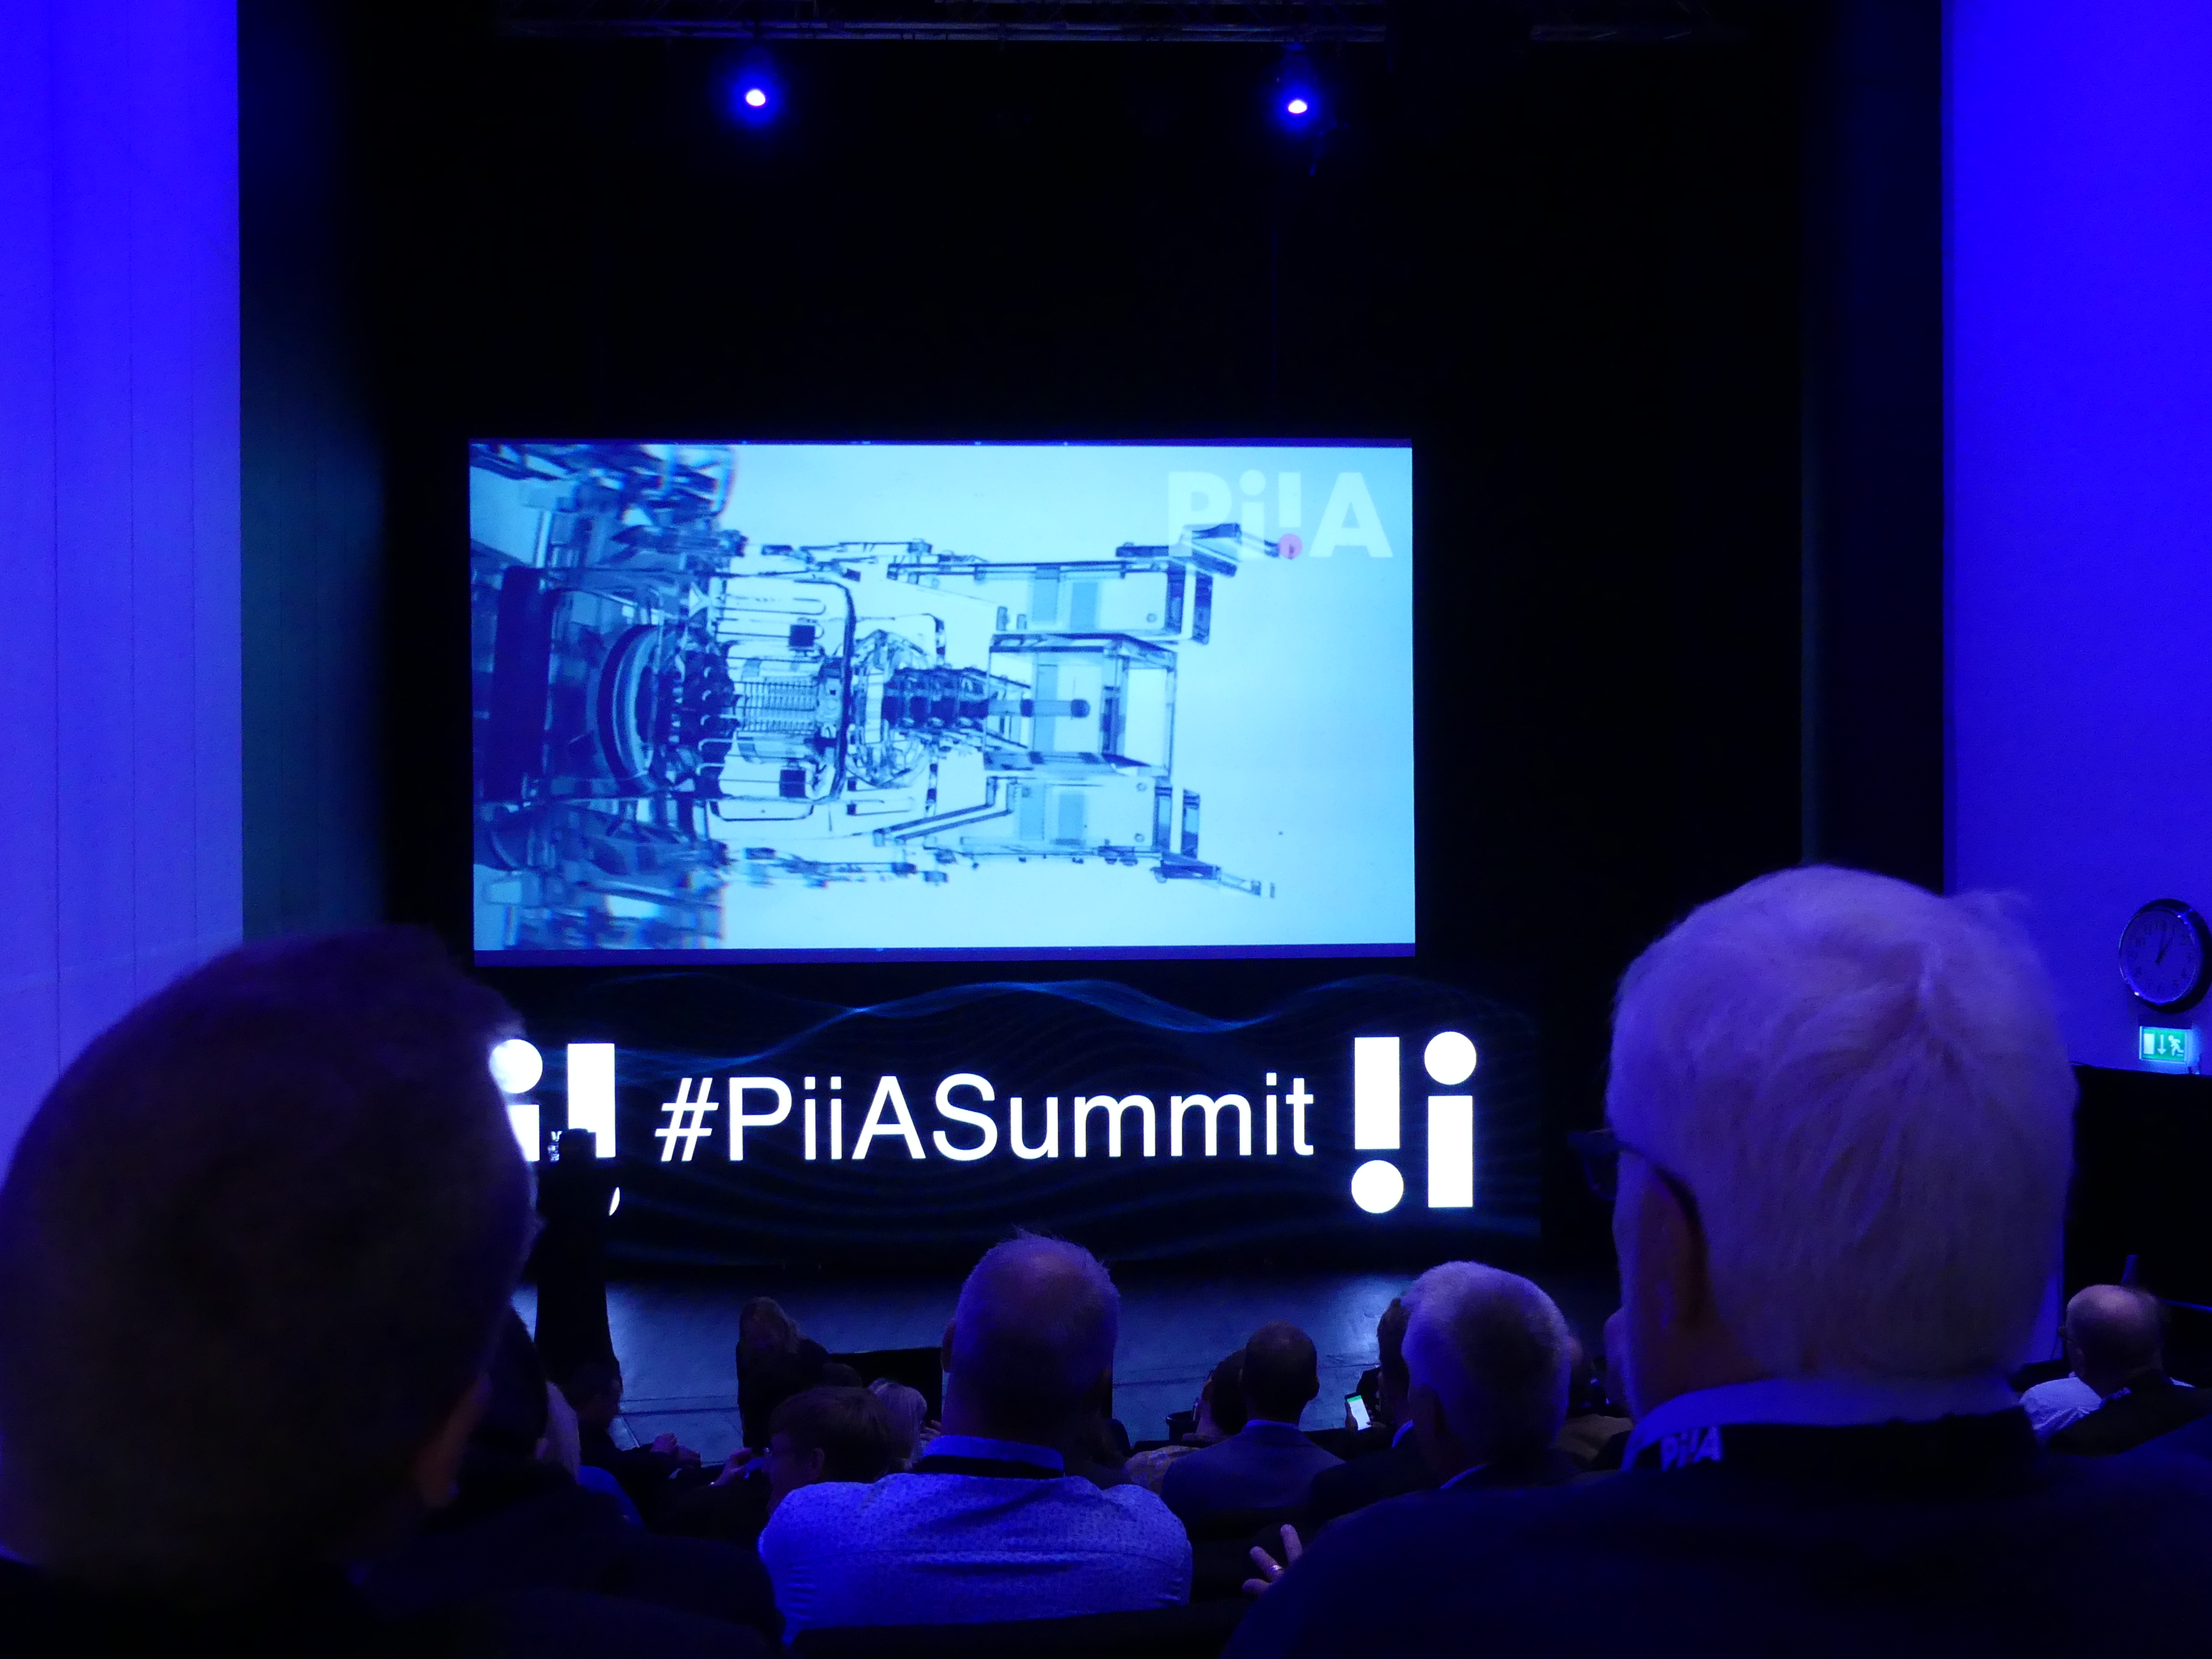 PiiA Summit 2018